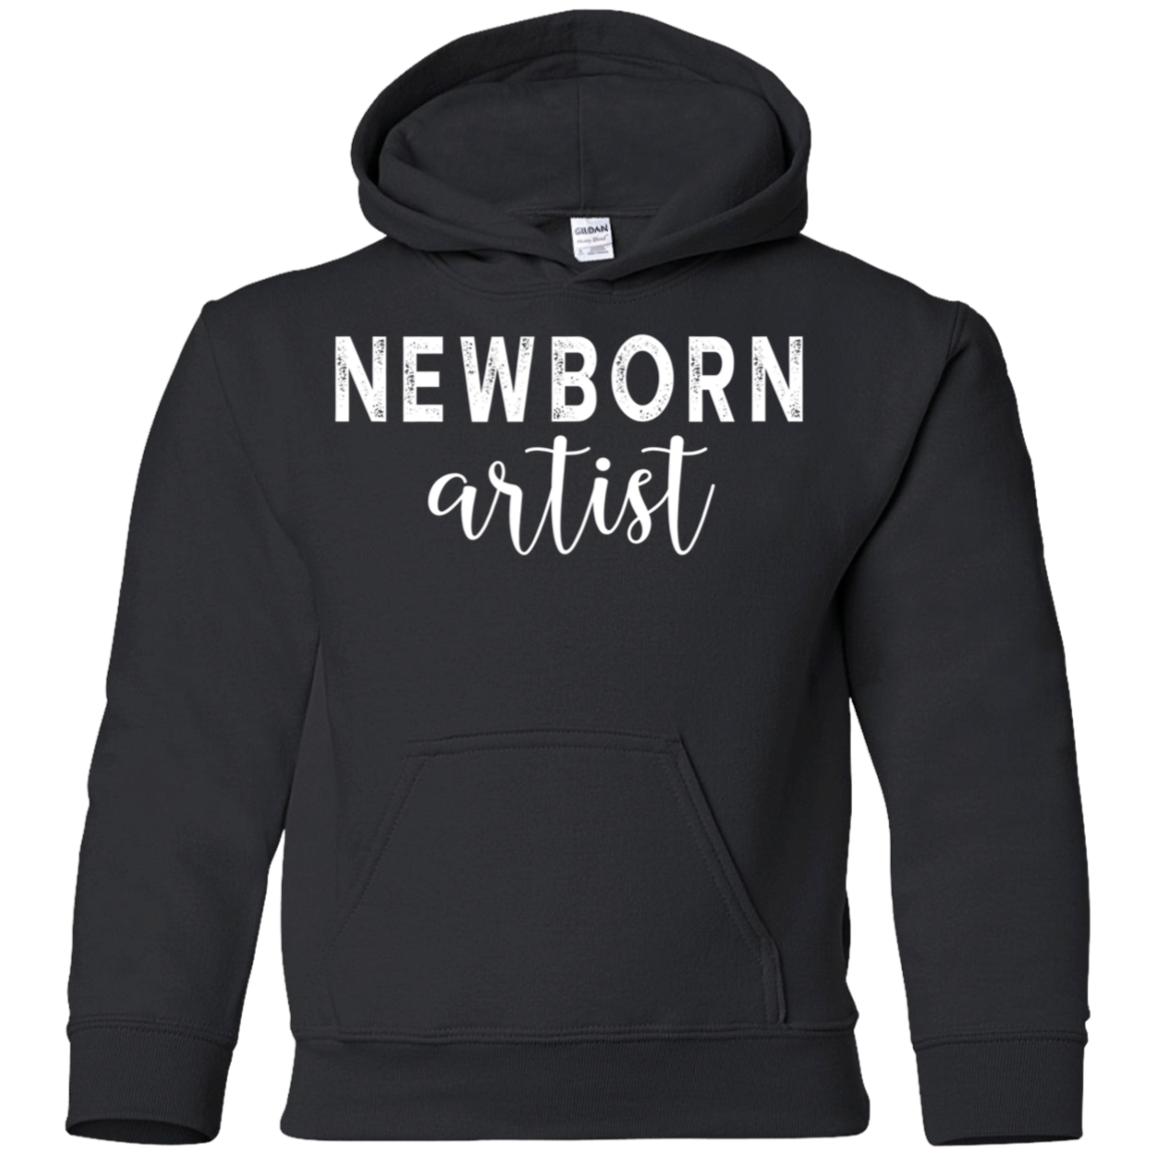 Newborn Artist Photographer Shirt G185b Pullover 